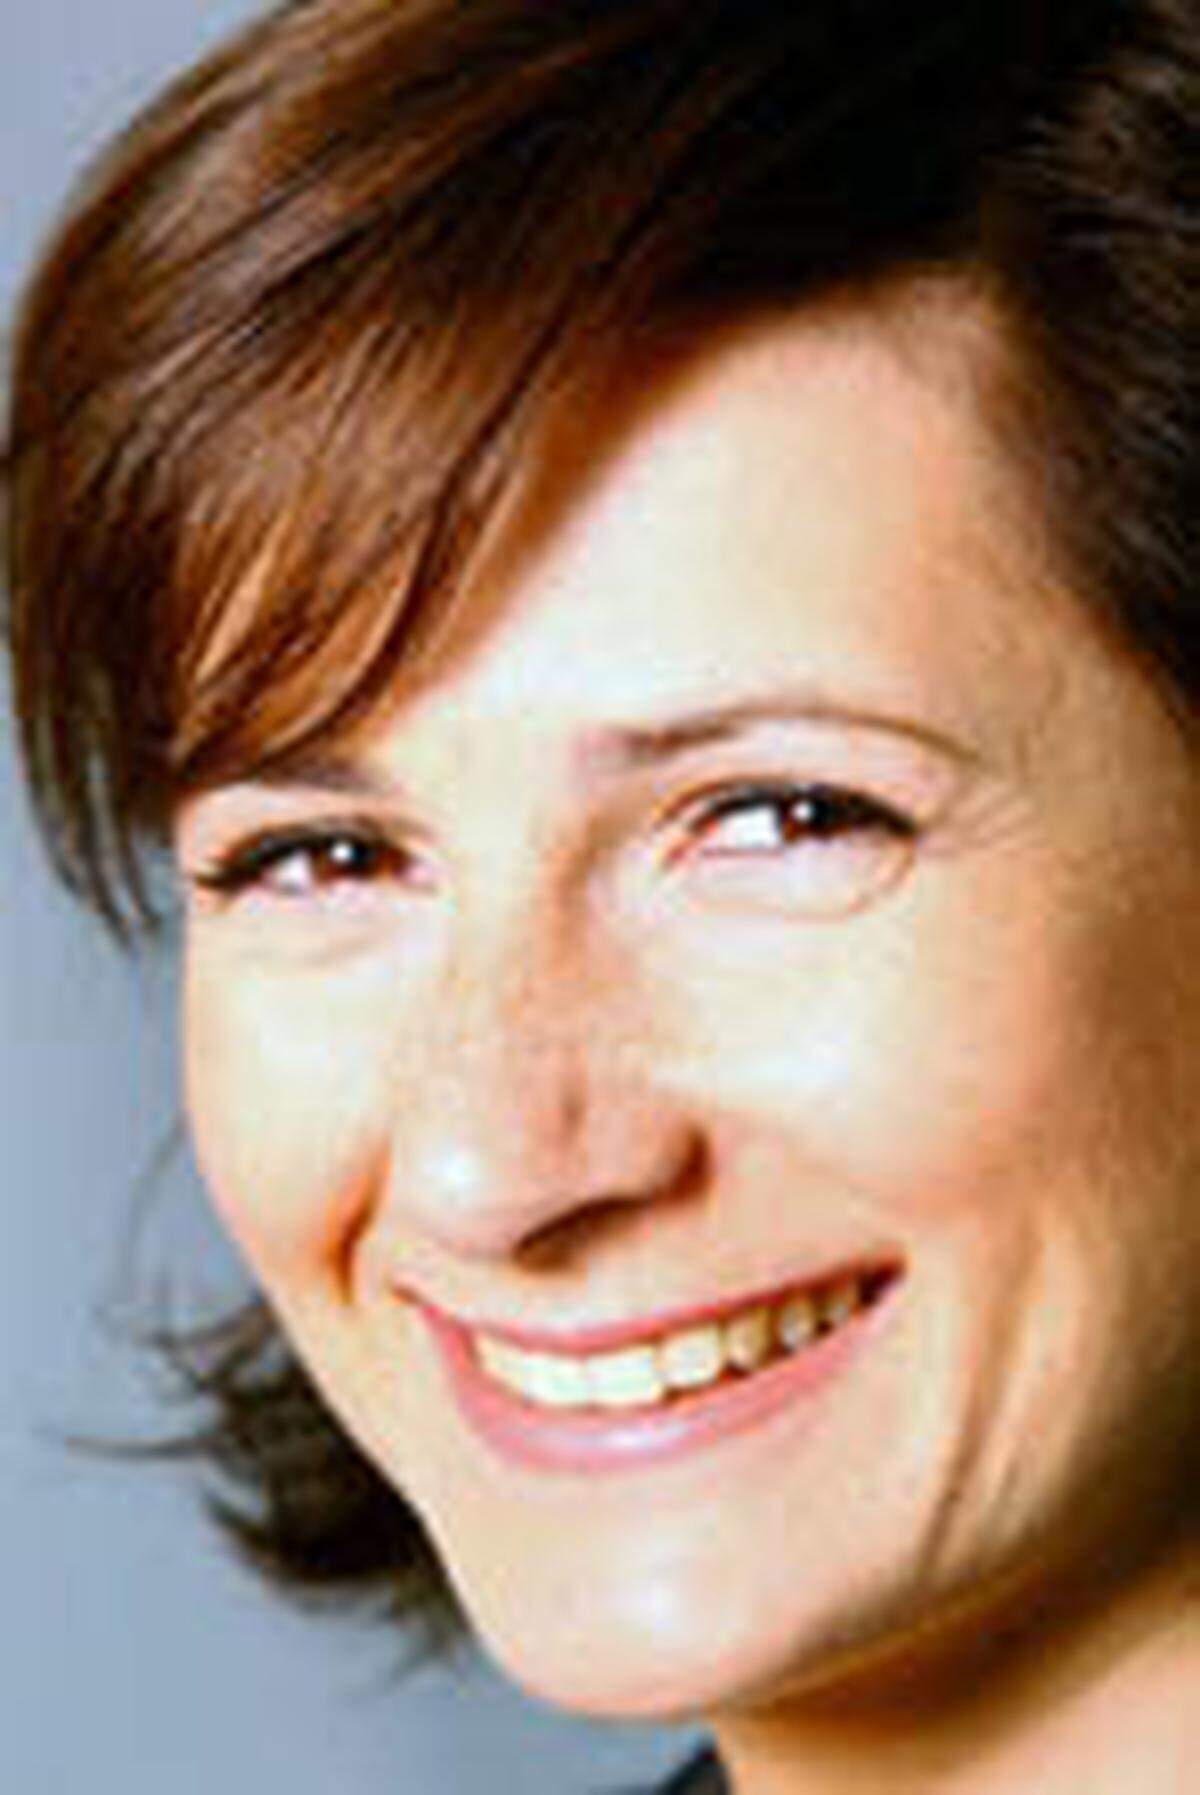 Kristijana Lastro (32) ist Head of Communications bei CMS Reich-Rohrwig Hainz. Die Kommunikationsexpertin ist ab sofort für Kommunikation und PR bei der renommierten Anwaltssozietät zuständig.